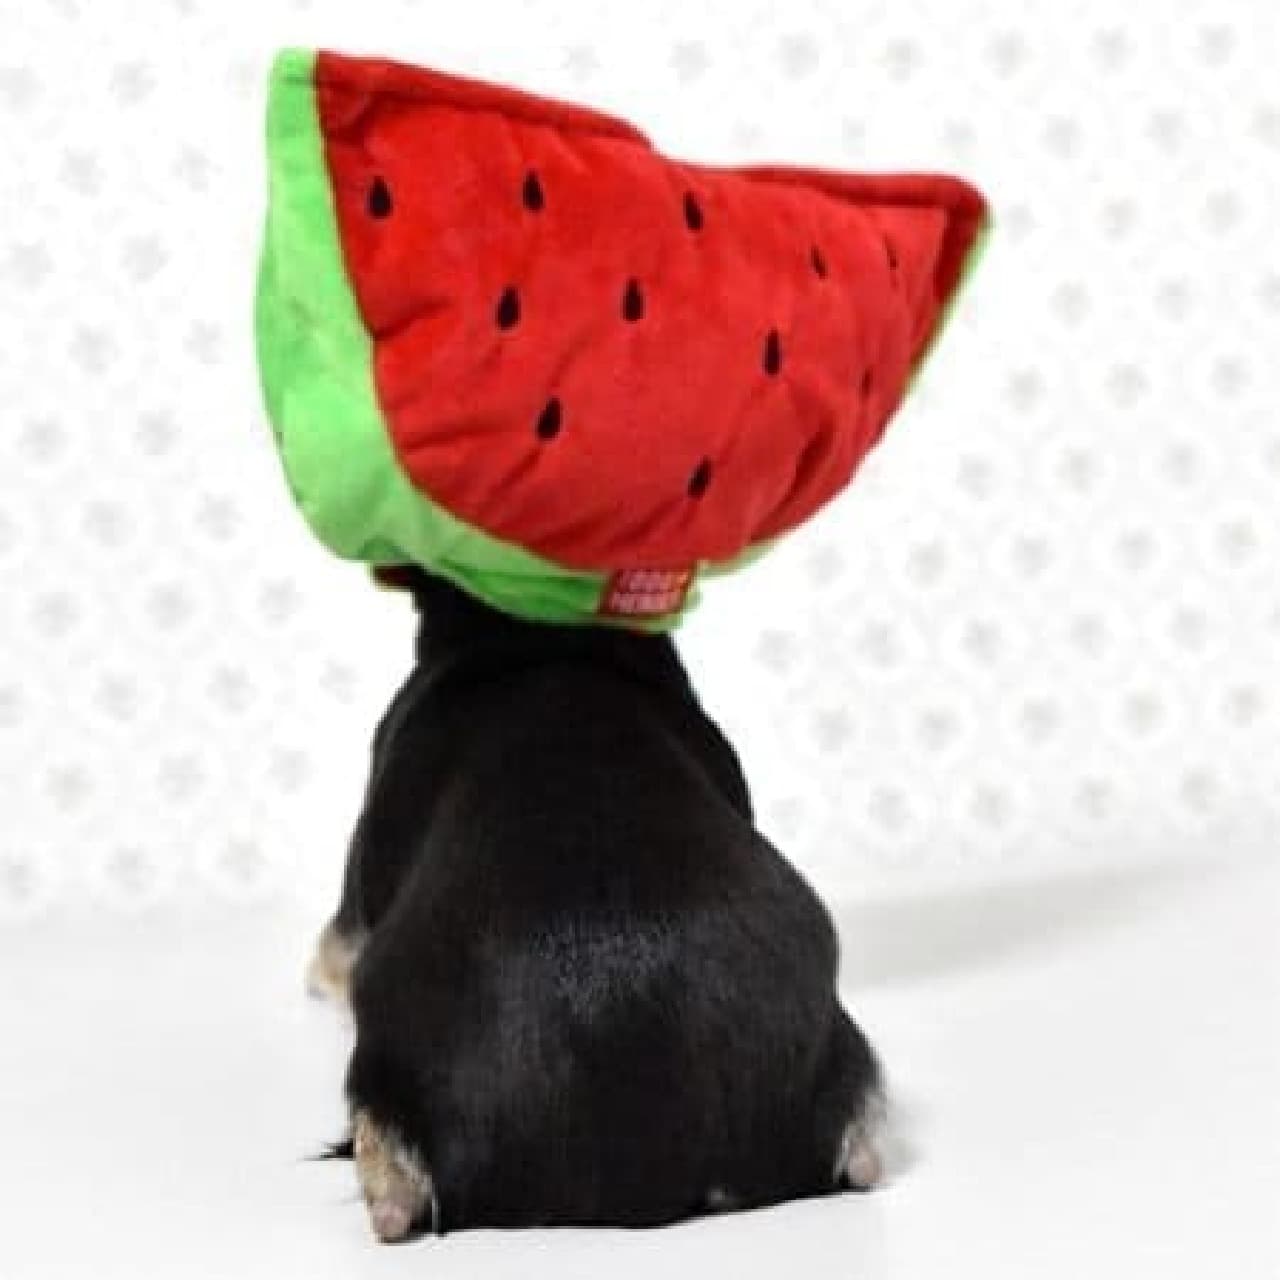 It is a walking watermelon